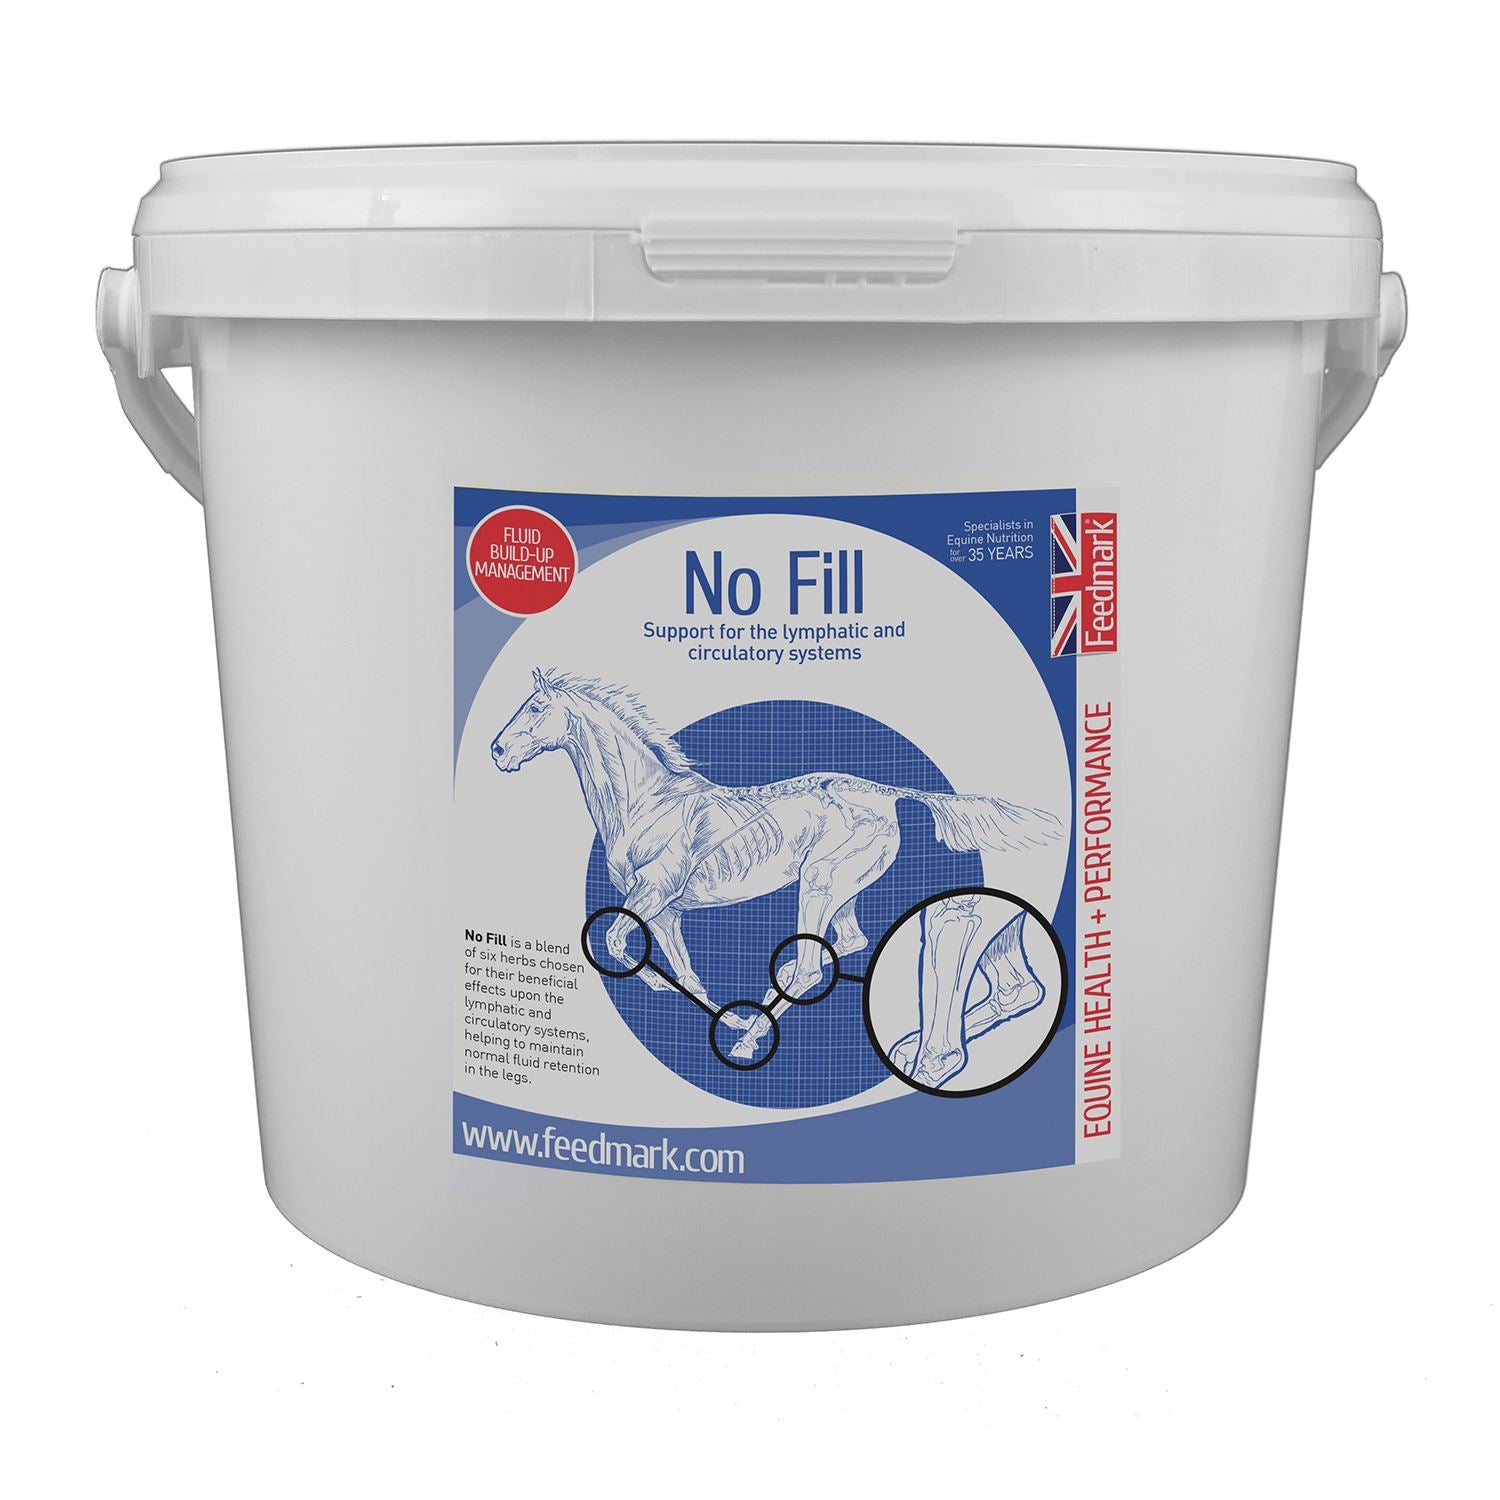 Feedmark No Fill - Just Horse Riders